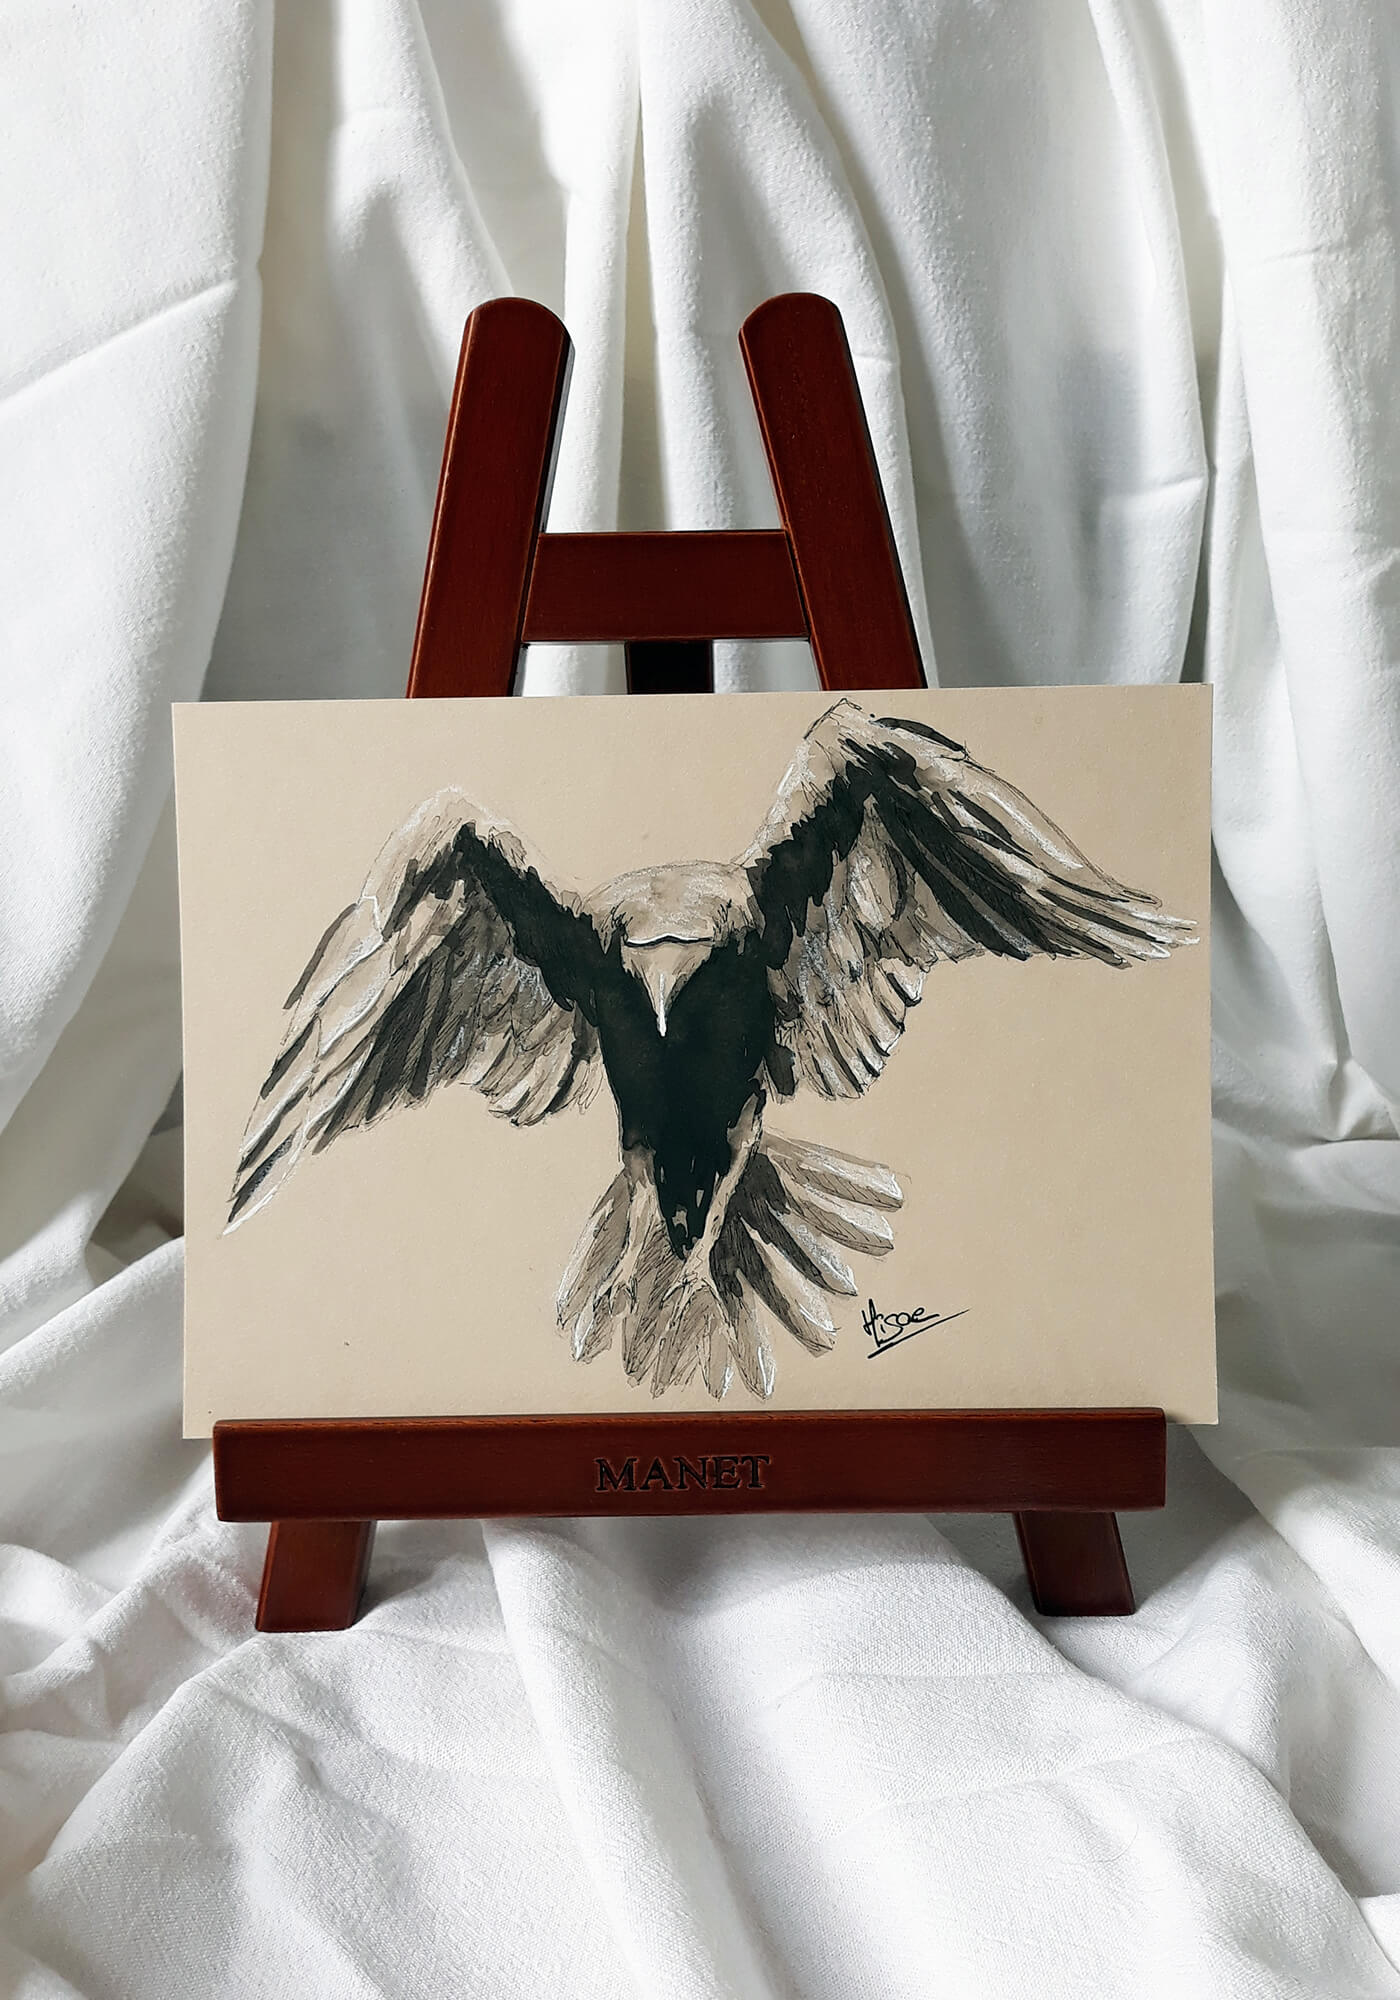 Dessin original à l'encre de Chine et crayon blanc sur chevalet représentant un corbeau de dos en train de s'envoler ©Hisae illustrations